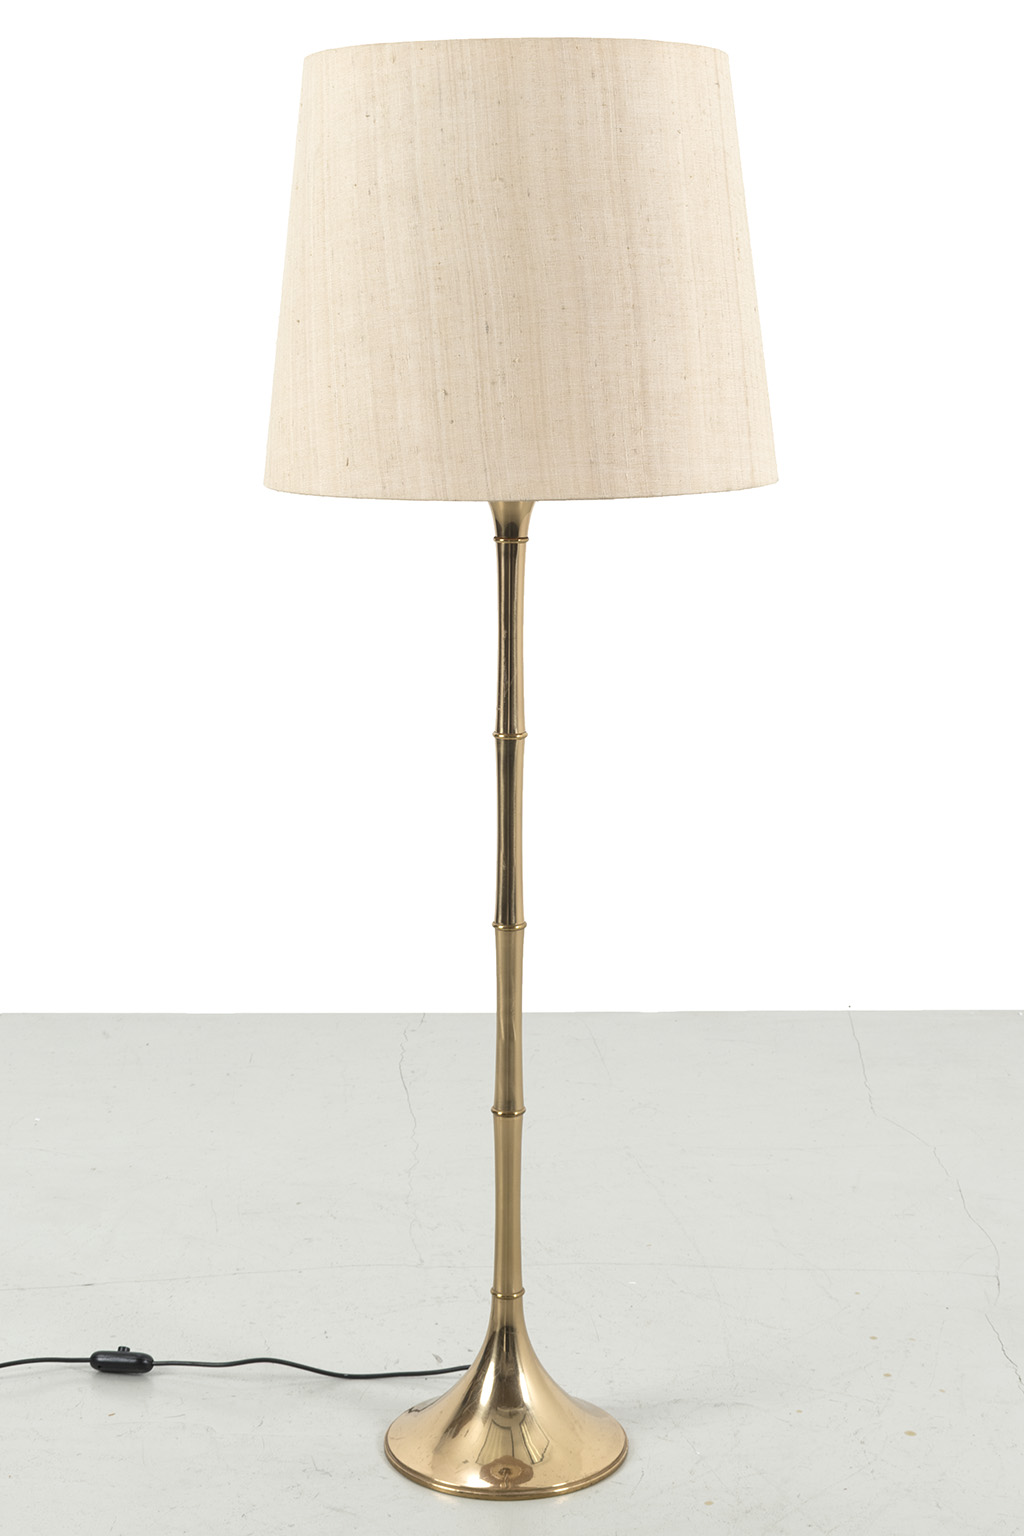 Ingo Maurer 60s floor lamp ‘Bamboo’